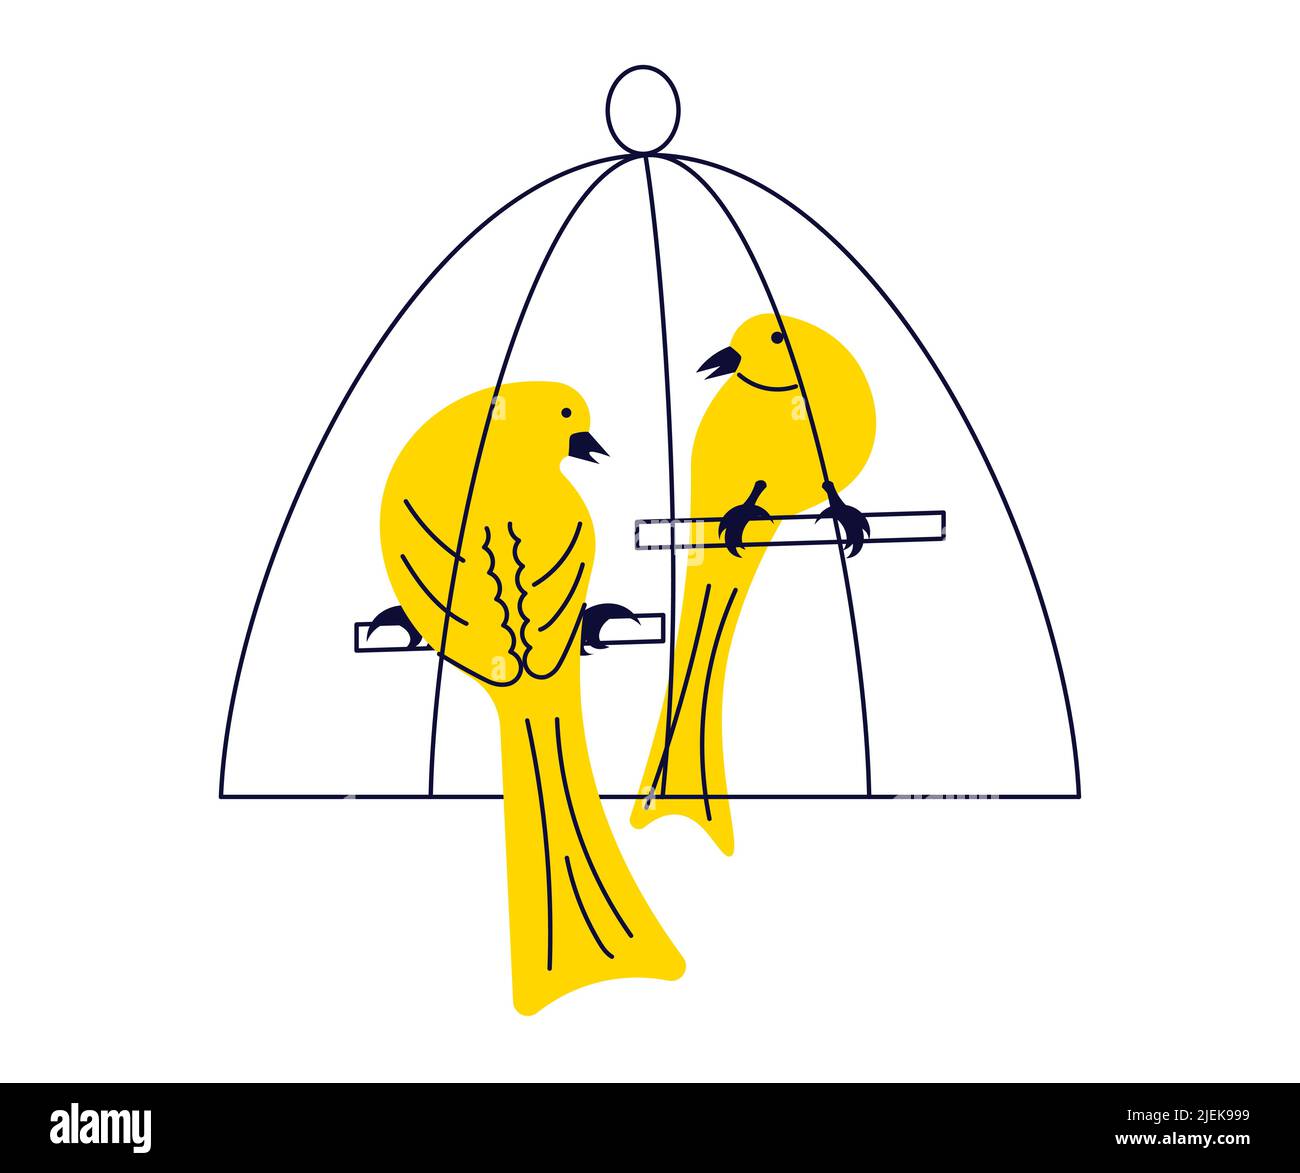 Simpatico paio di uccelli canarino in gabbia, uccelli songbird stilizzati animali domestici isolati su uno sfondo bianco. Illustrazione del vettore Flat Art Illustrazione Vettoriale